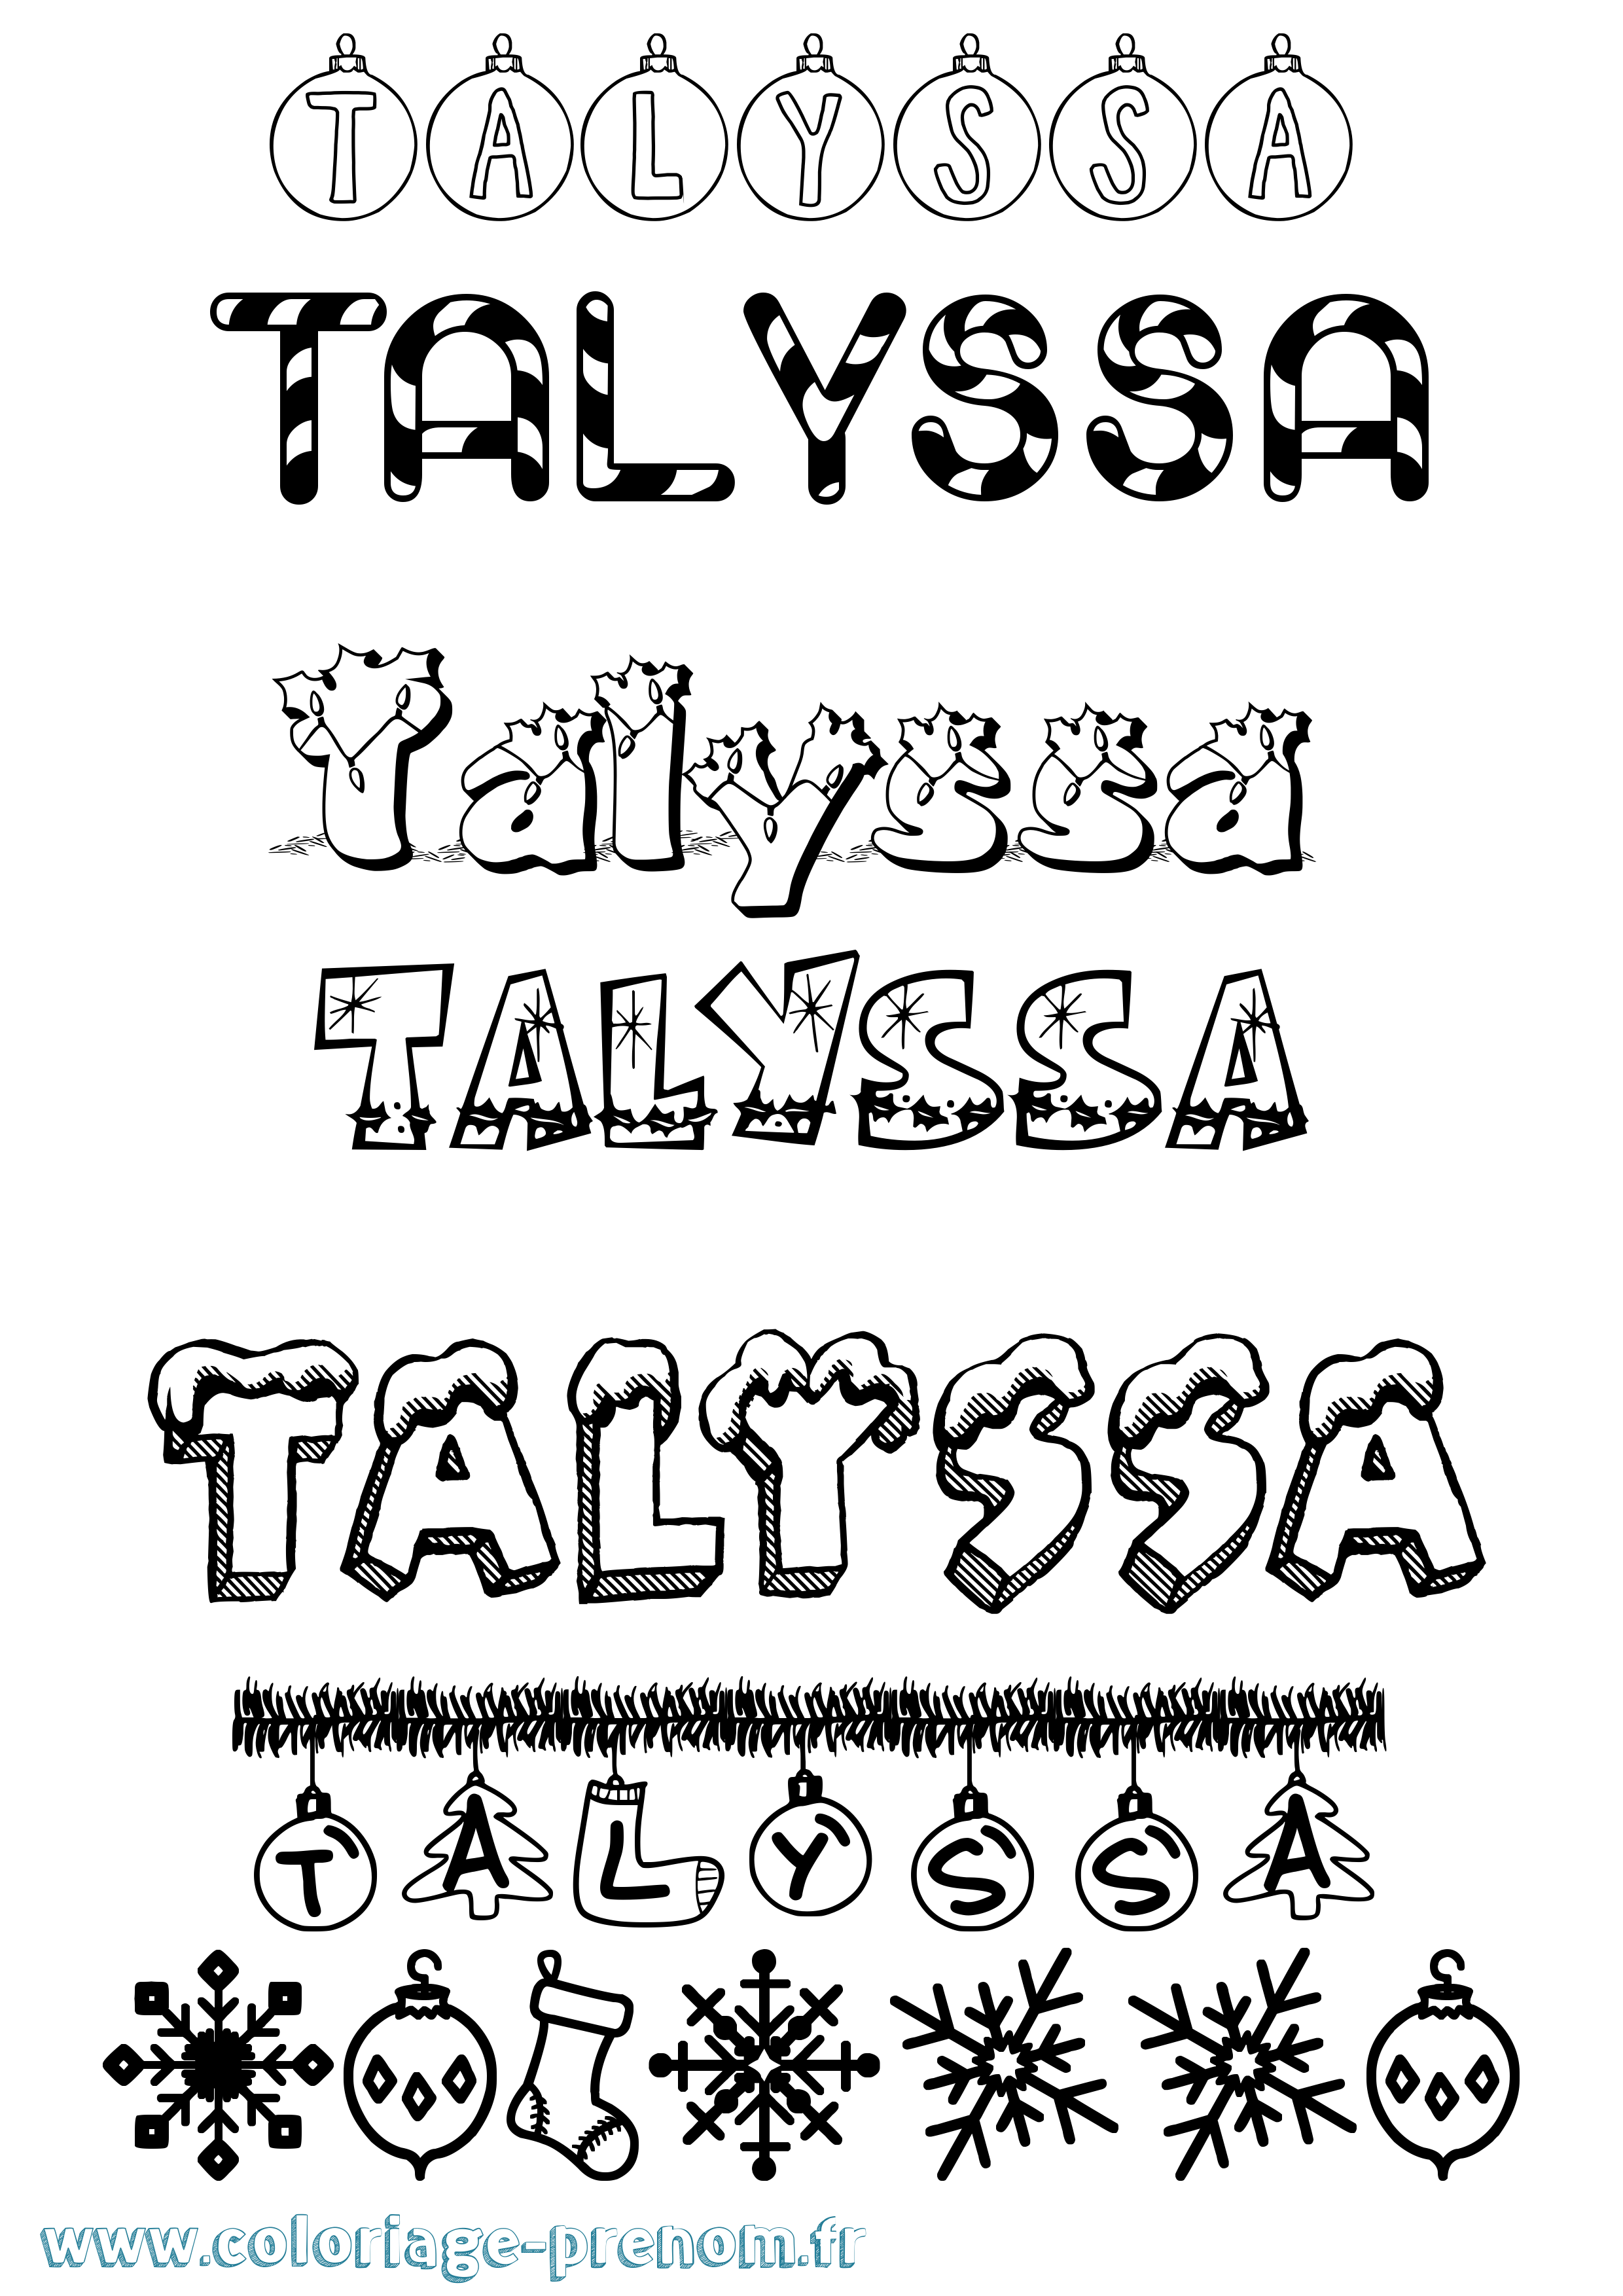 Coloriage prénom Talyssa Noël